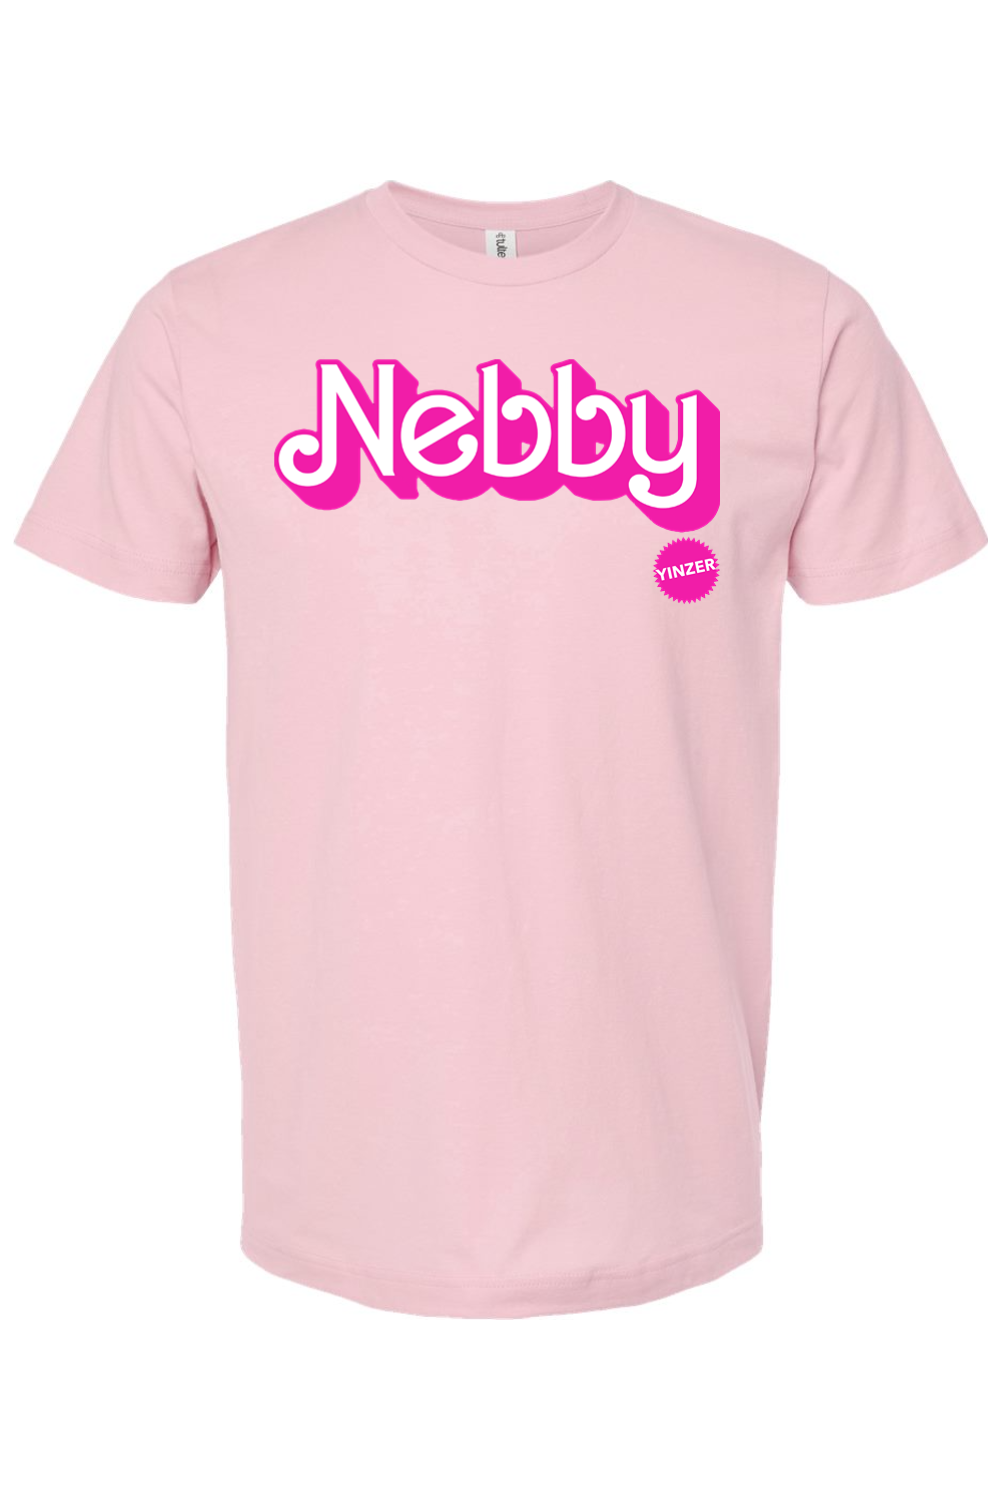 Malibu Nebby - Jersey Tee - Yinzylvania